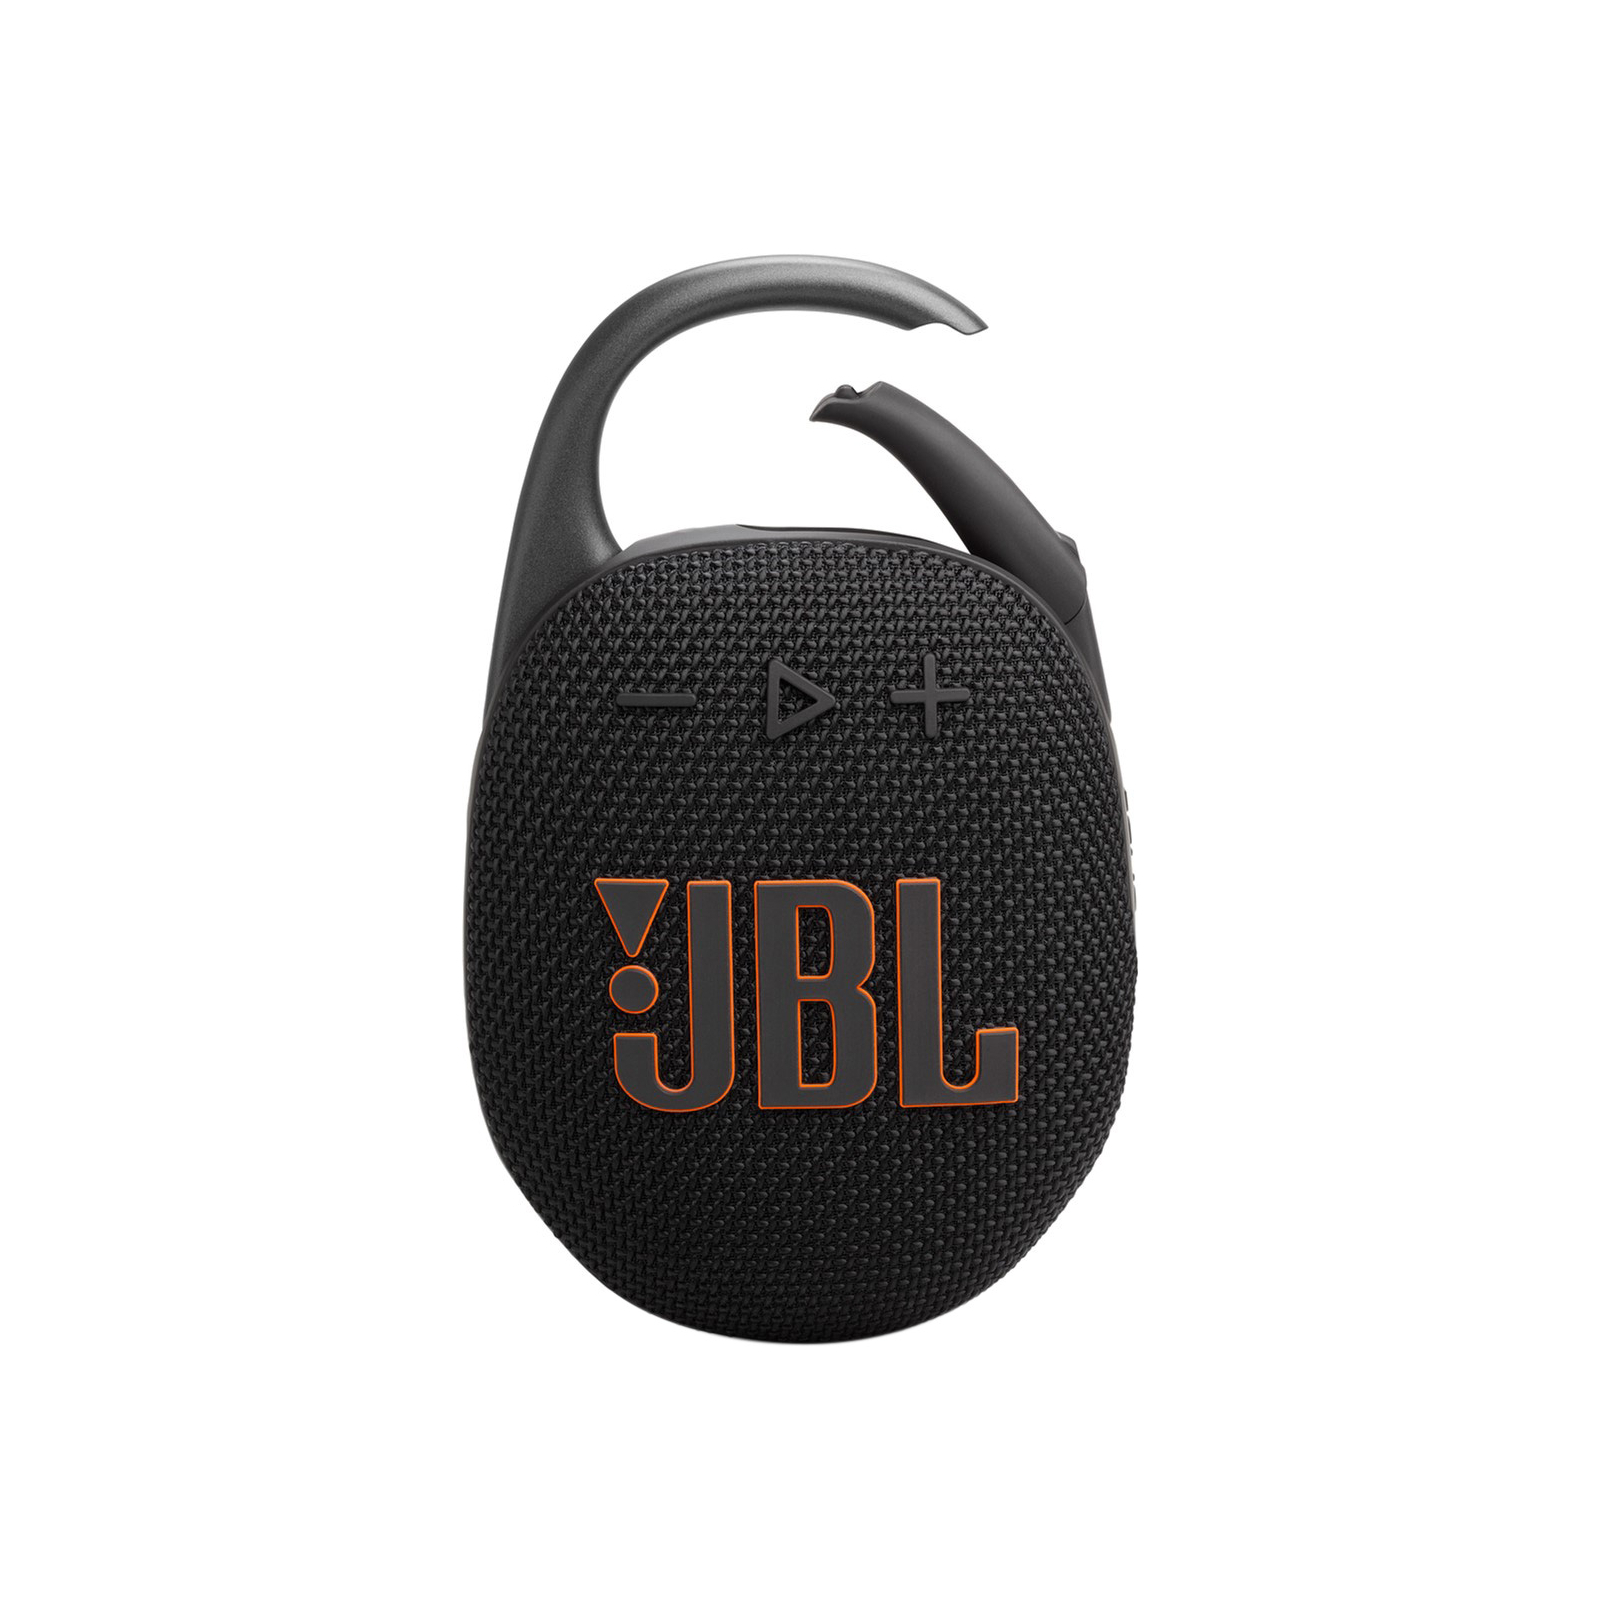 Акустична система JBL Clip 5 Red (JBLCLIP5RED)